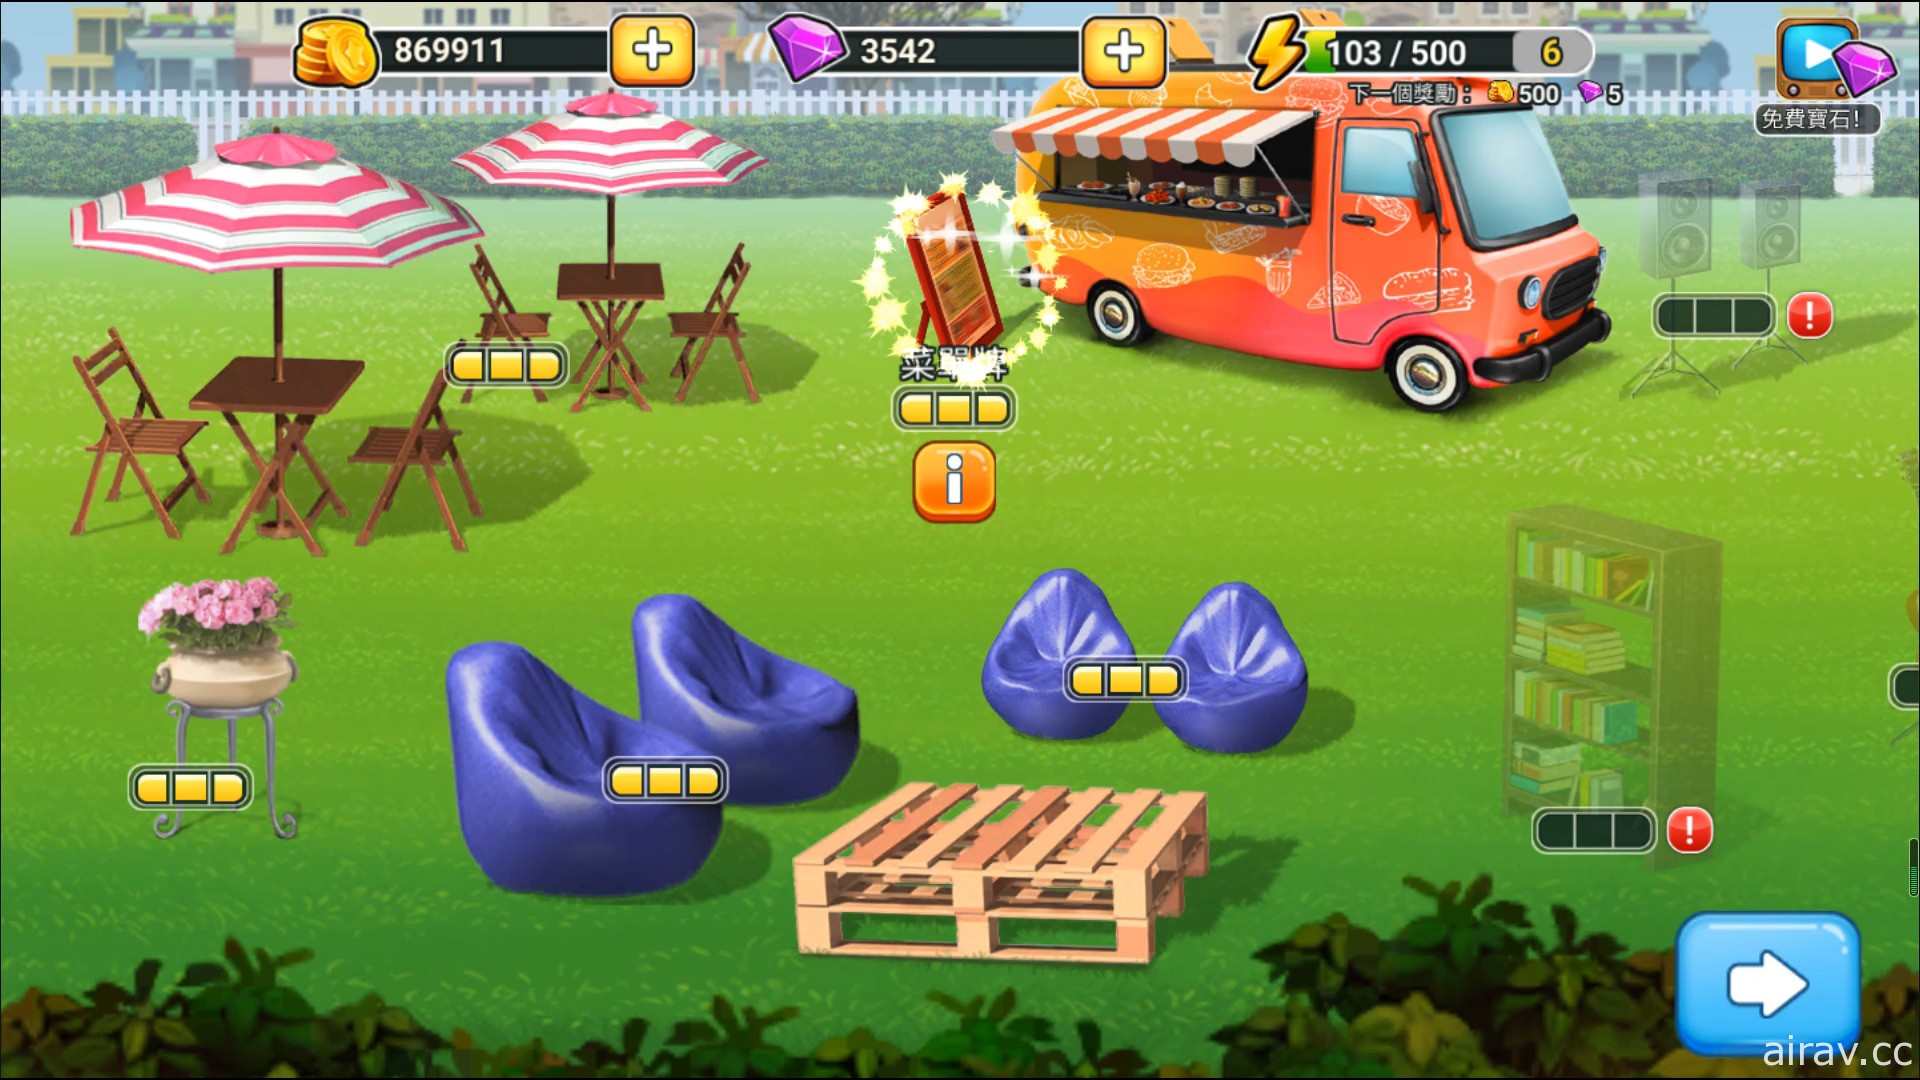 《餐车之旅：环球模拟餐厅烹饪游戏》台港澳版 12 月底将开启 Android 删档封测预约